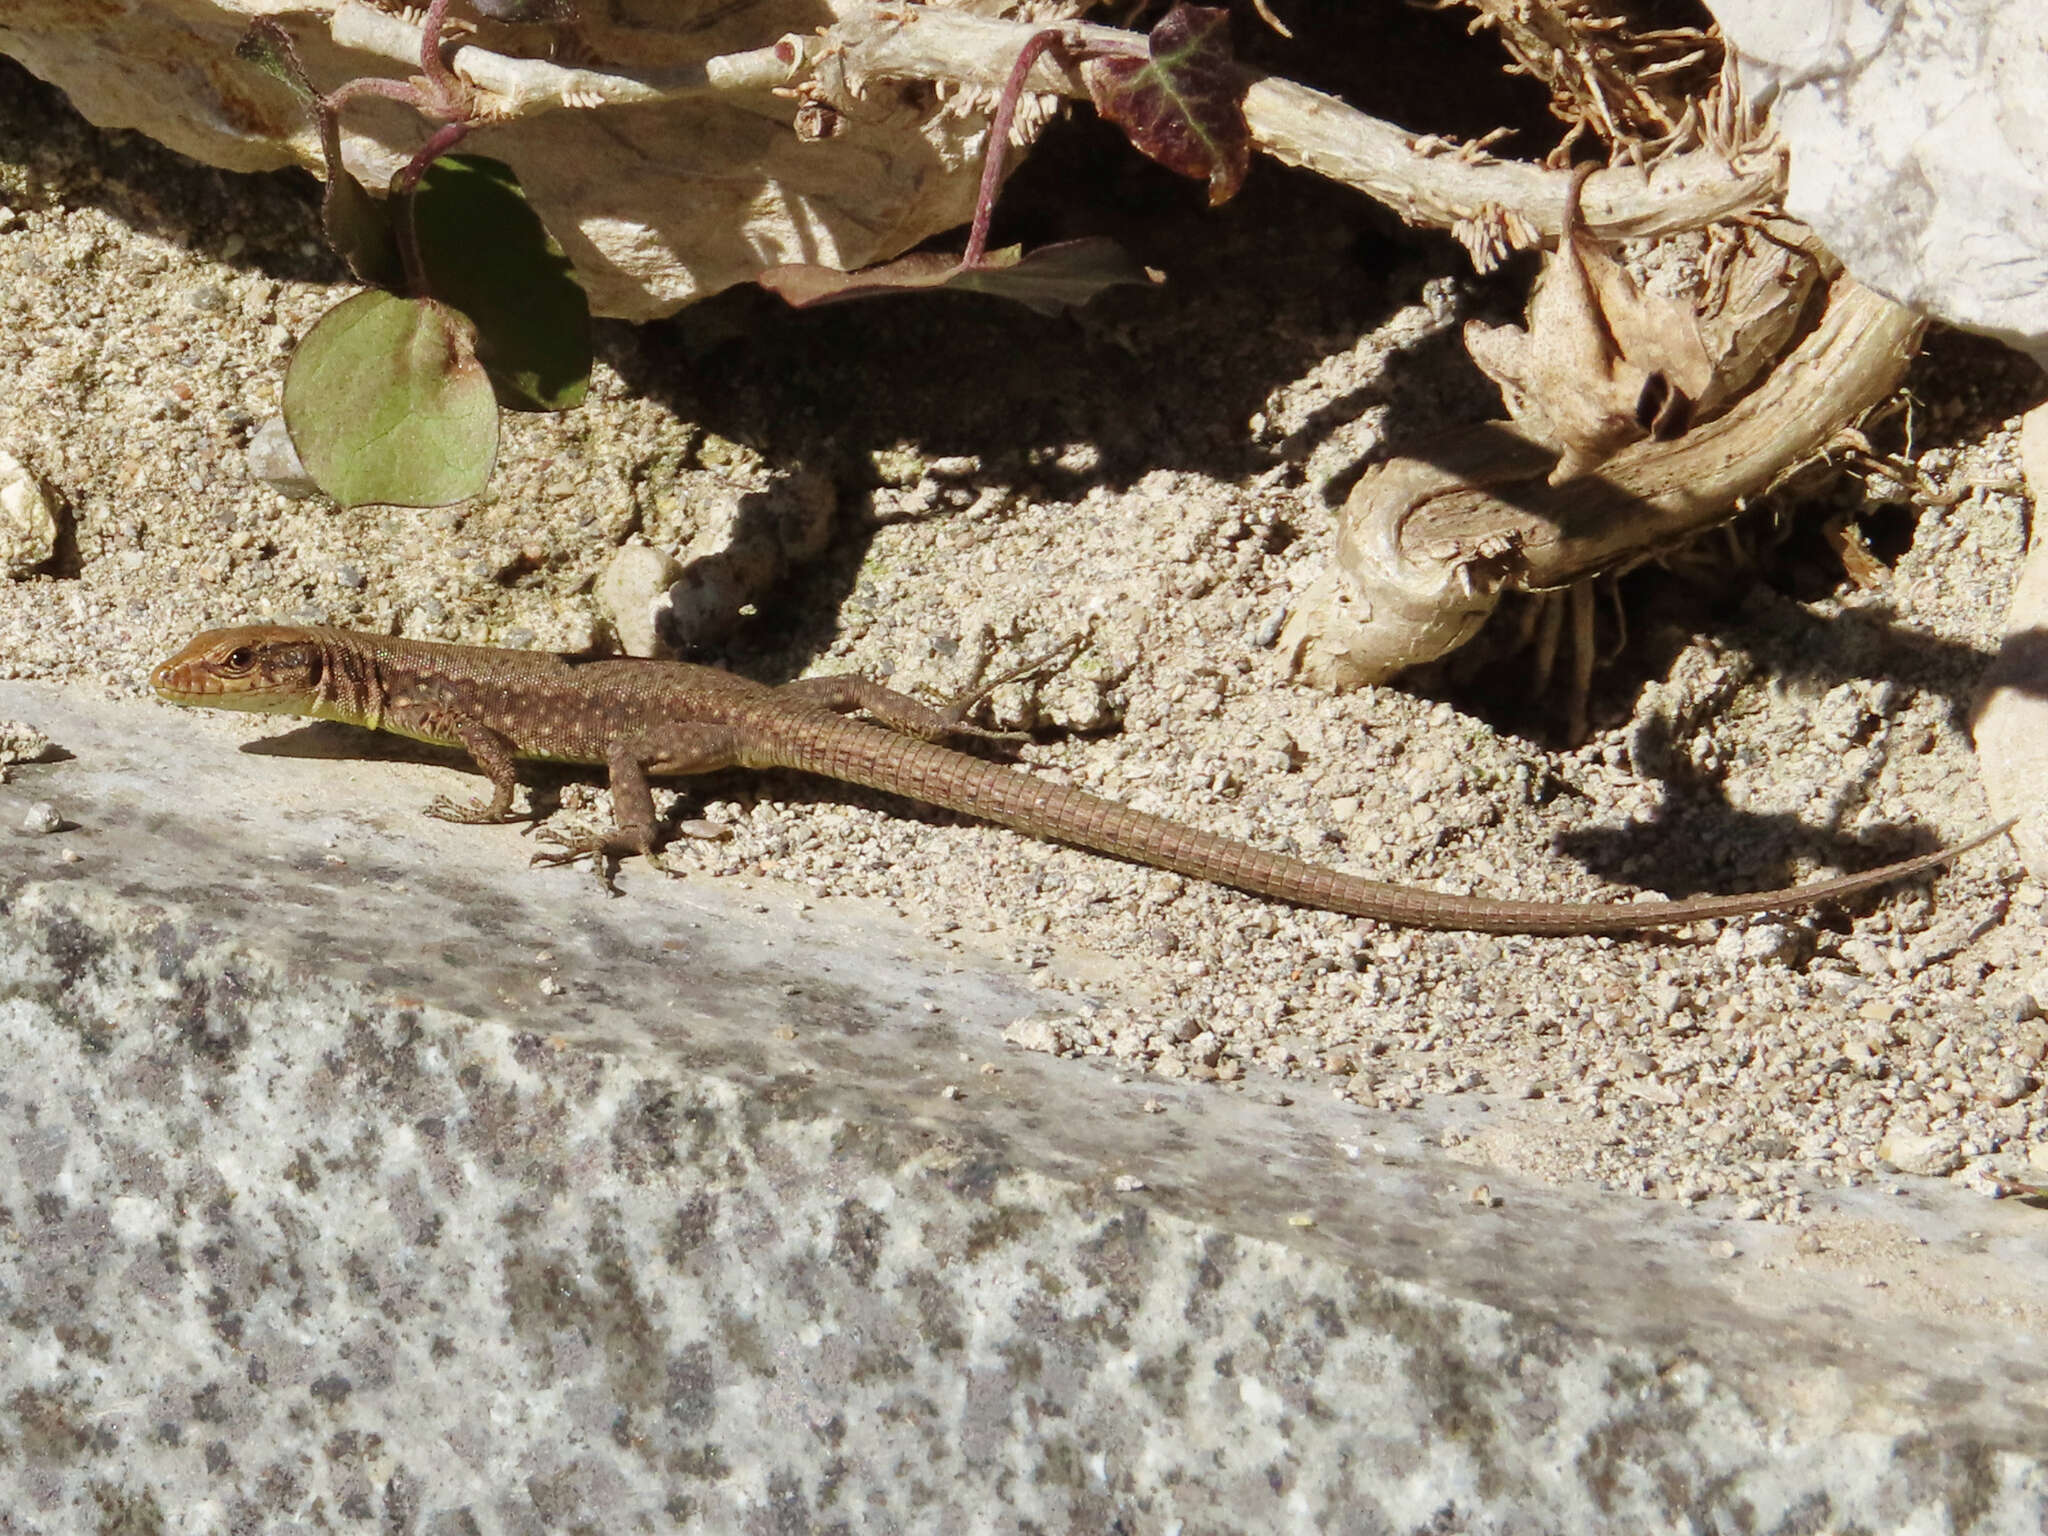 Image of Ajarian lizard